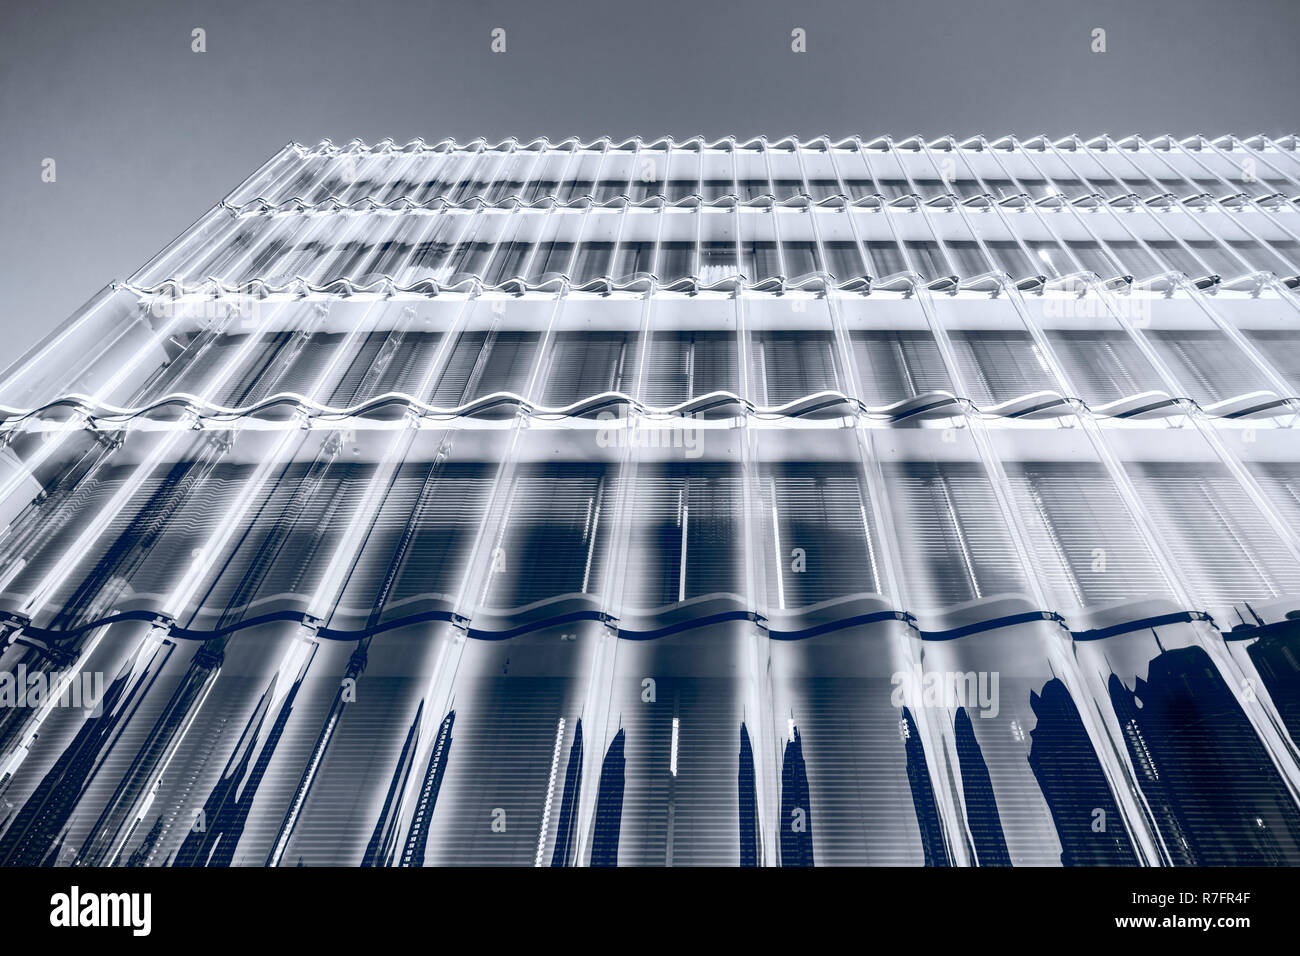 Swiss Re headquarter in Zurich, Swiss Re Next building,  by Diener & Diener architects, Zurich, Switzerland Stock Photo